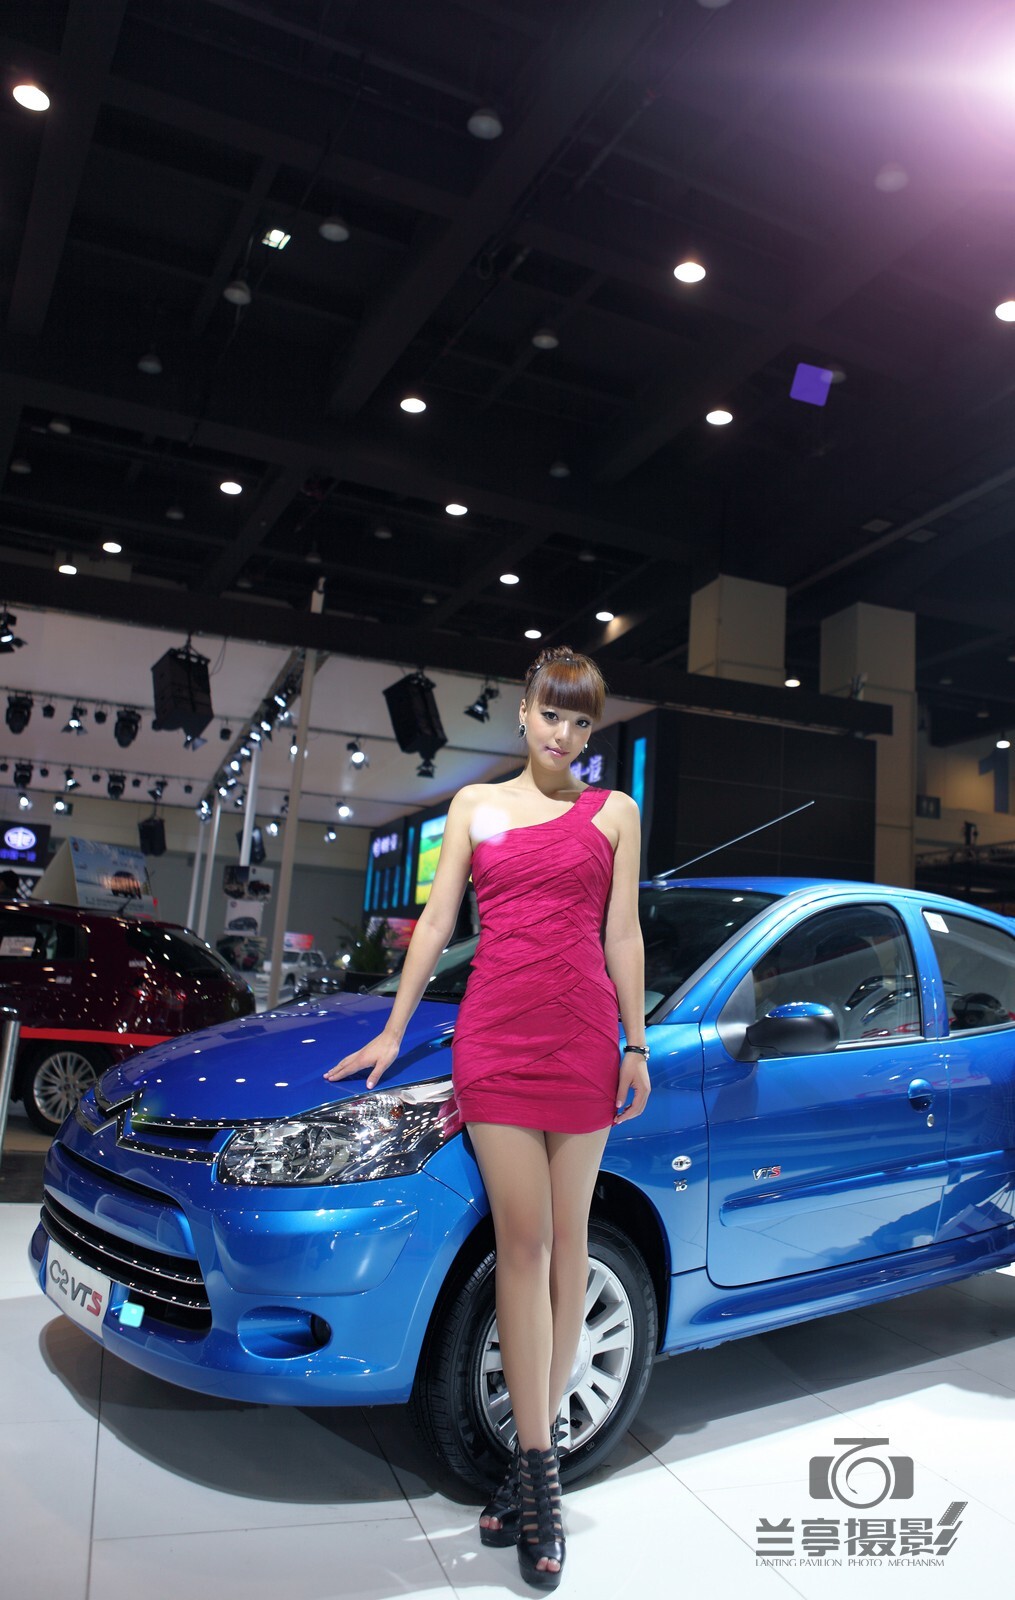 Beautiful car model of the 4th Zhengzhou International Auto Show